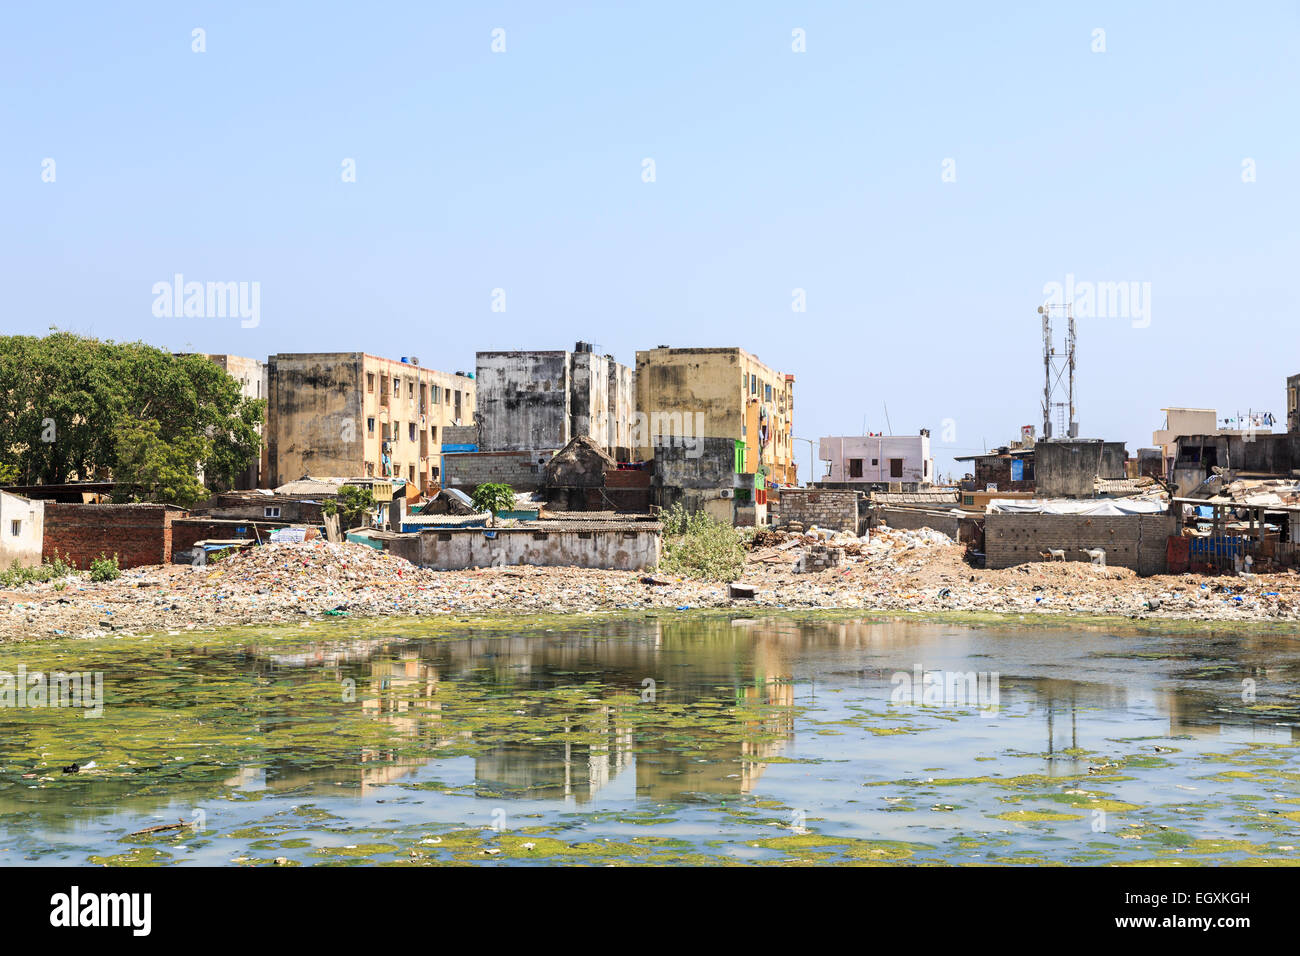 Armut in der Dritten Welt Lifestyle: Schlechte Riverside Slum mietskasernen am Ufer des verschmutzten Adyar Flussmündung in Chennai, Tamil Nadu, Südindien Stockfoto